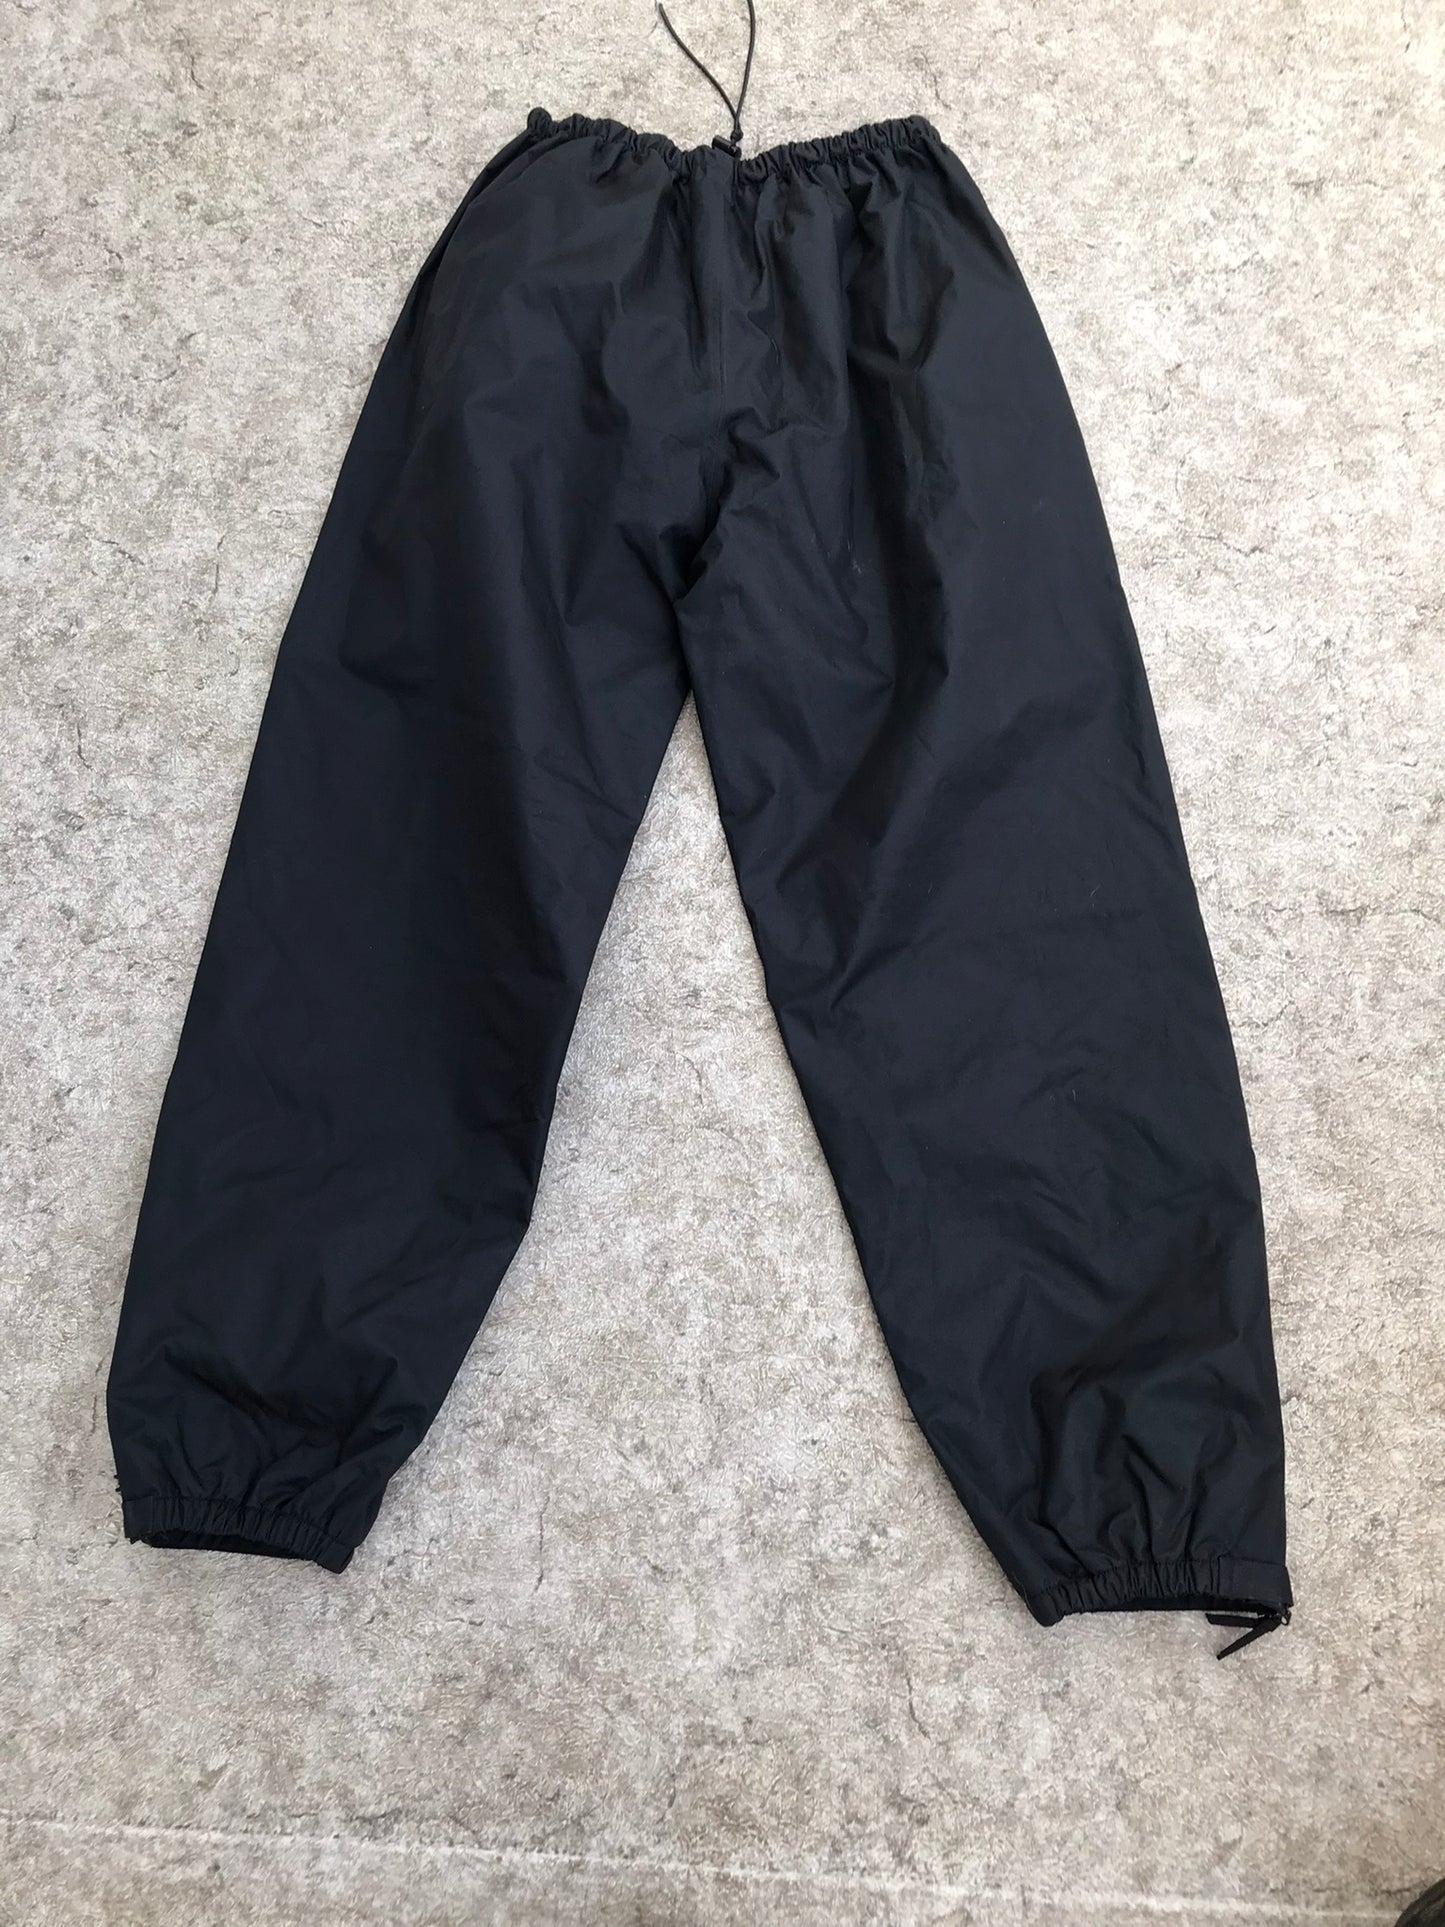 Rain Pants Men's Size XX Large Wetskins Black Waterproof Excellent